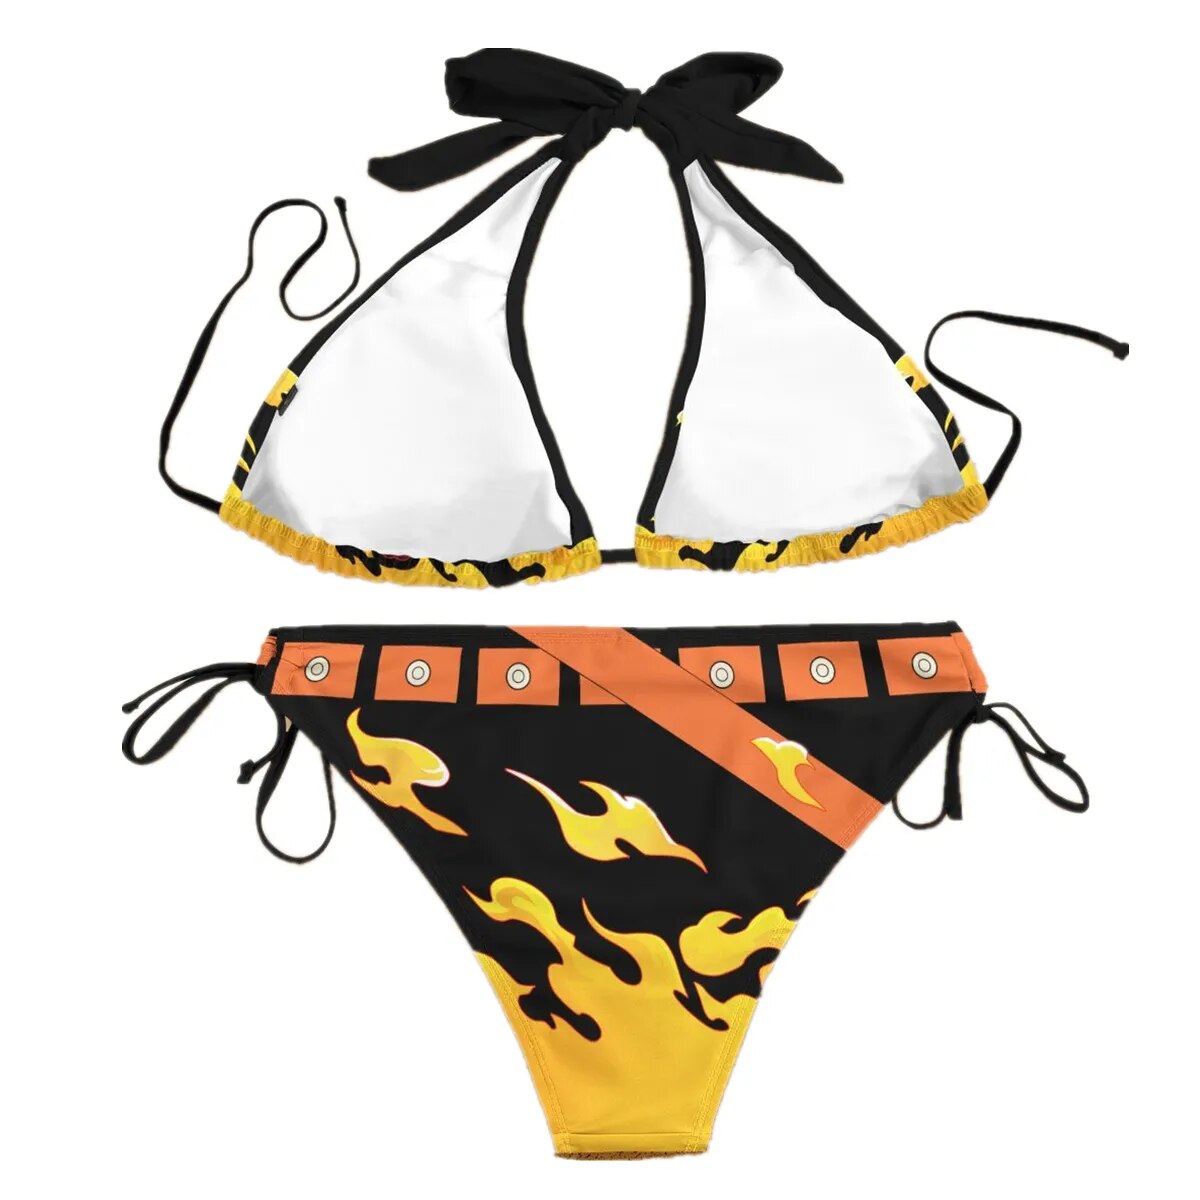  Ace Swimsuit Bikini